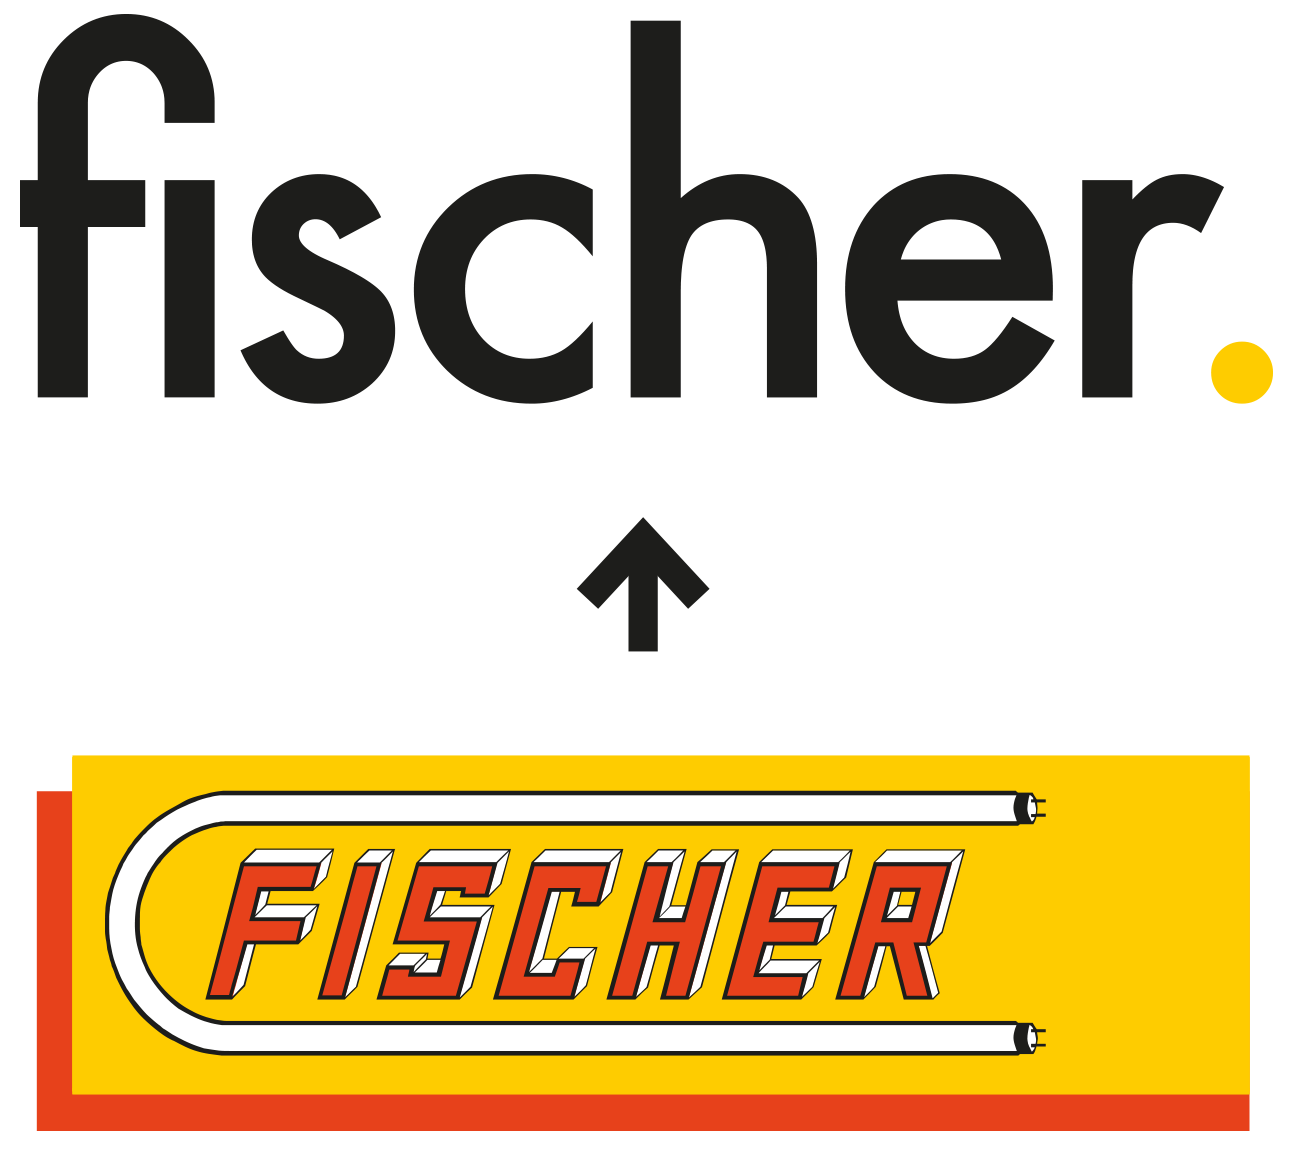 fischer. in neuem Corporate Design - Fischer Elektro- und